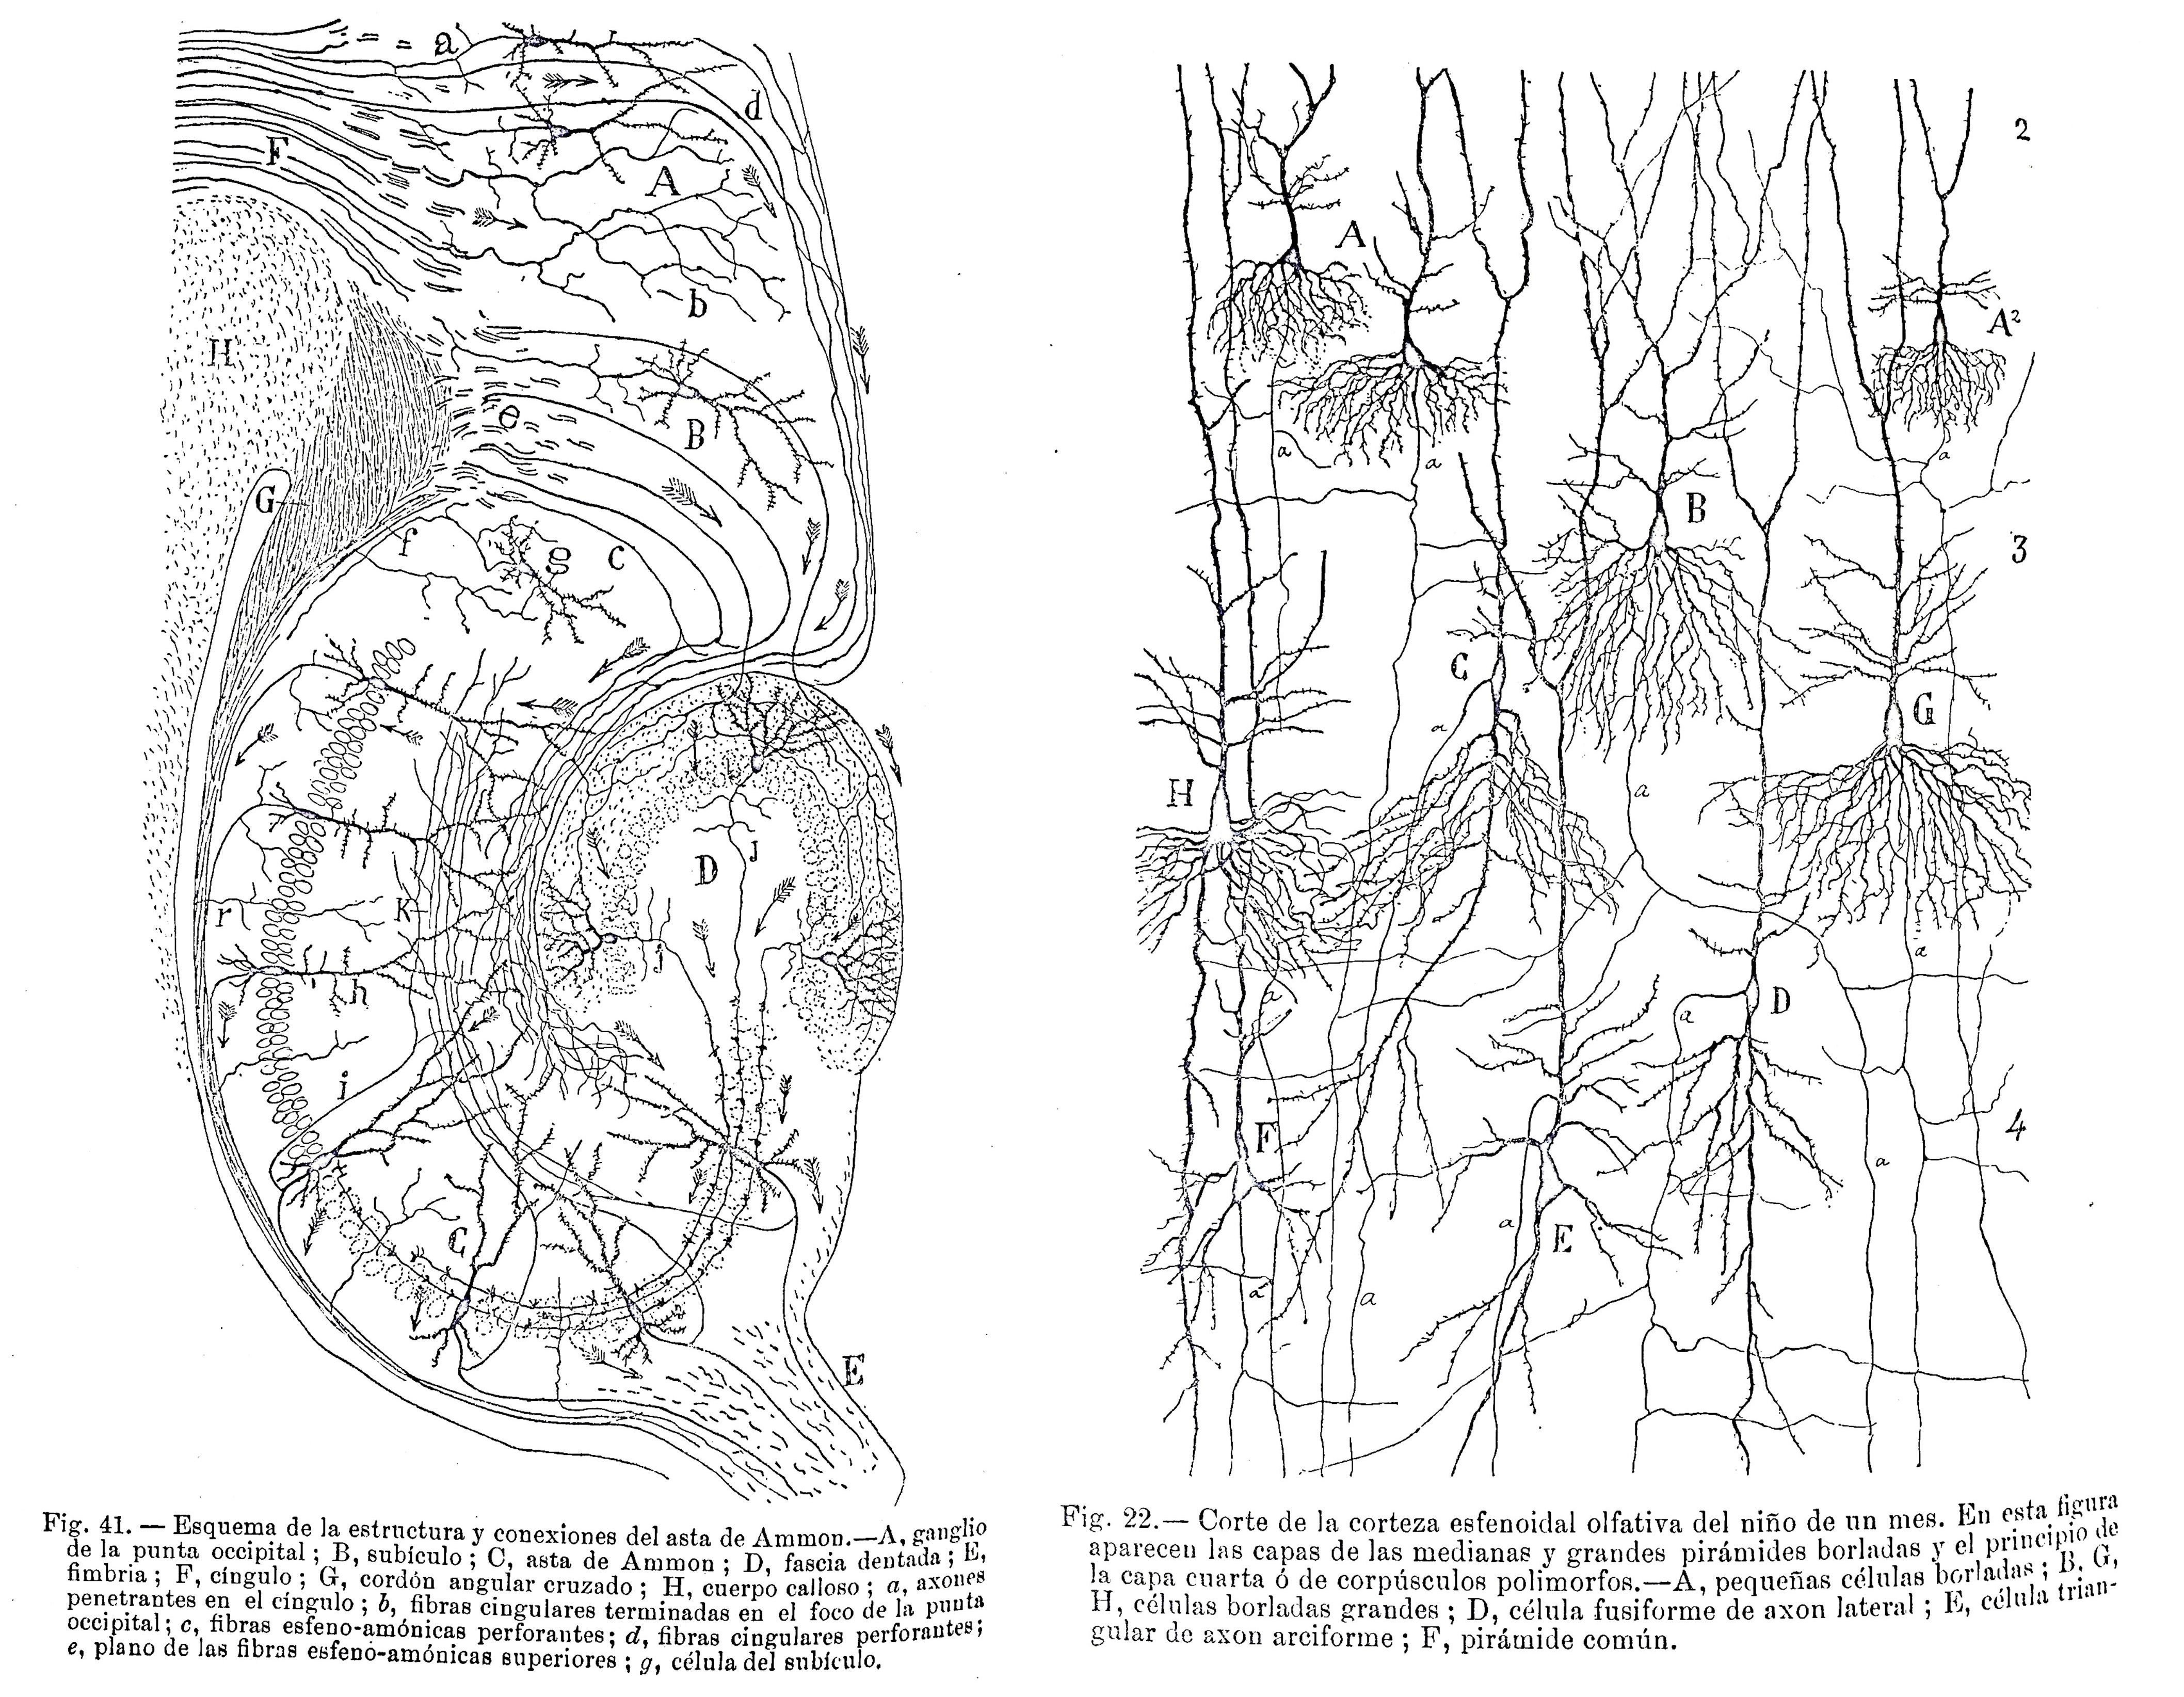 Dibujos de Santiago Ramón y Cajal incluidos en el primer volumen de Trabajos del Laboratorio de Investigaciones Biológicas.